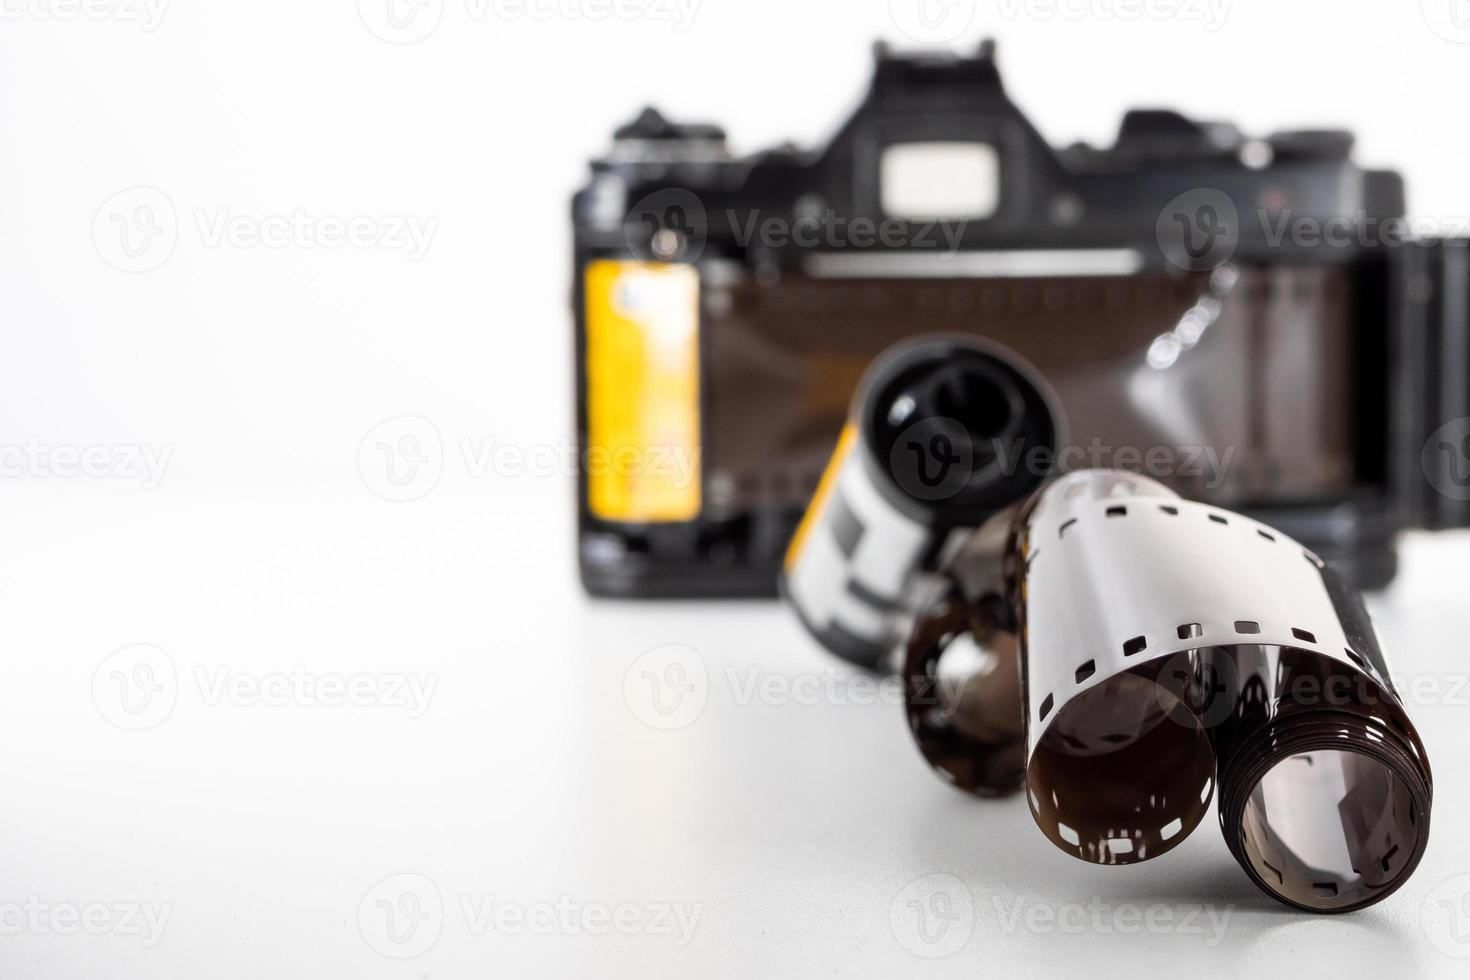 appareil photo reflex à objectif unique et un rouleau de film sur un fond blanc.